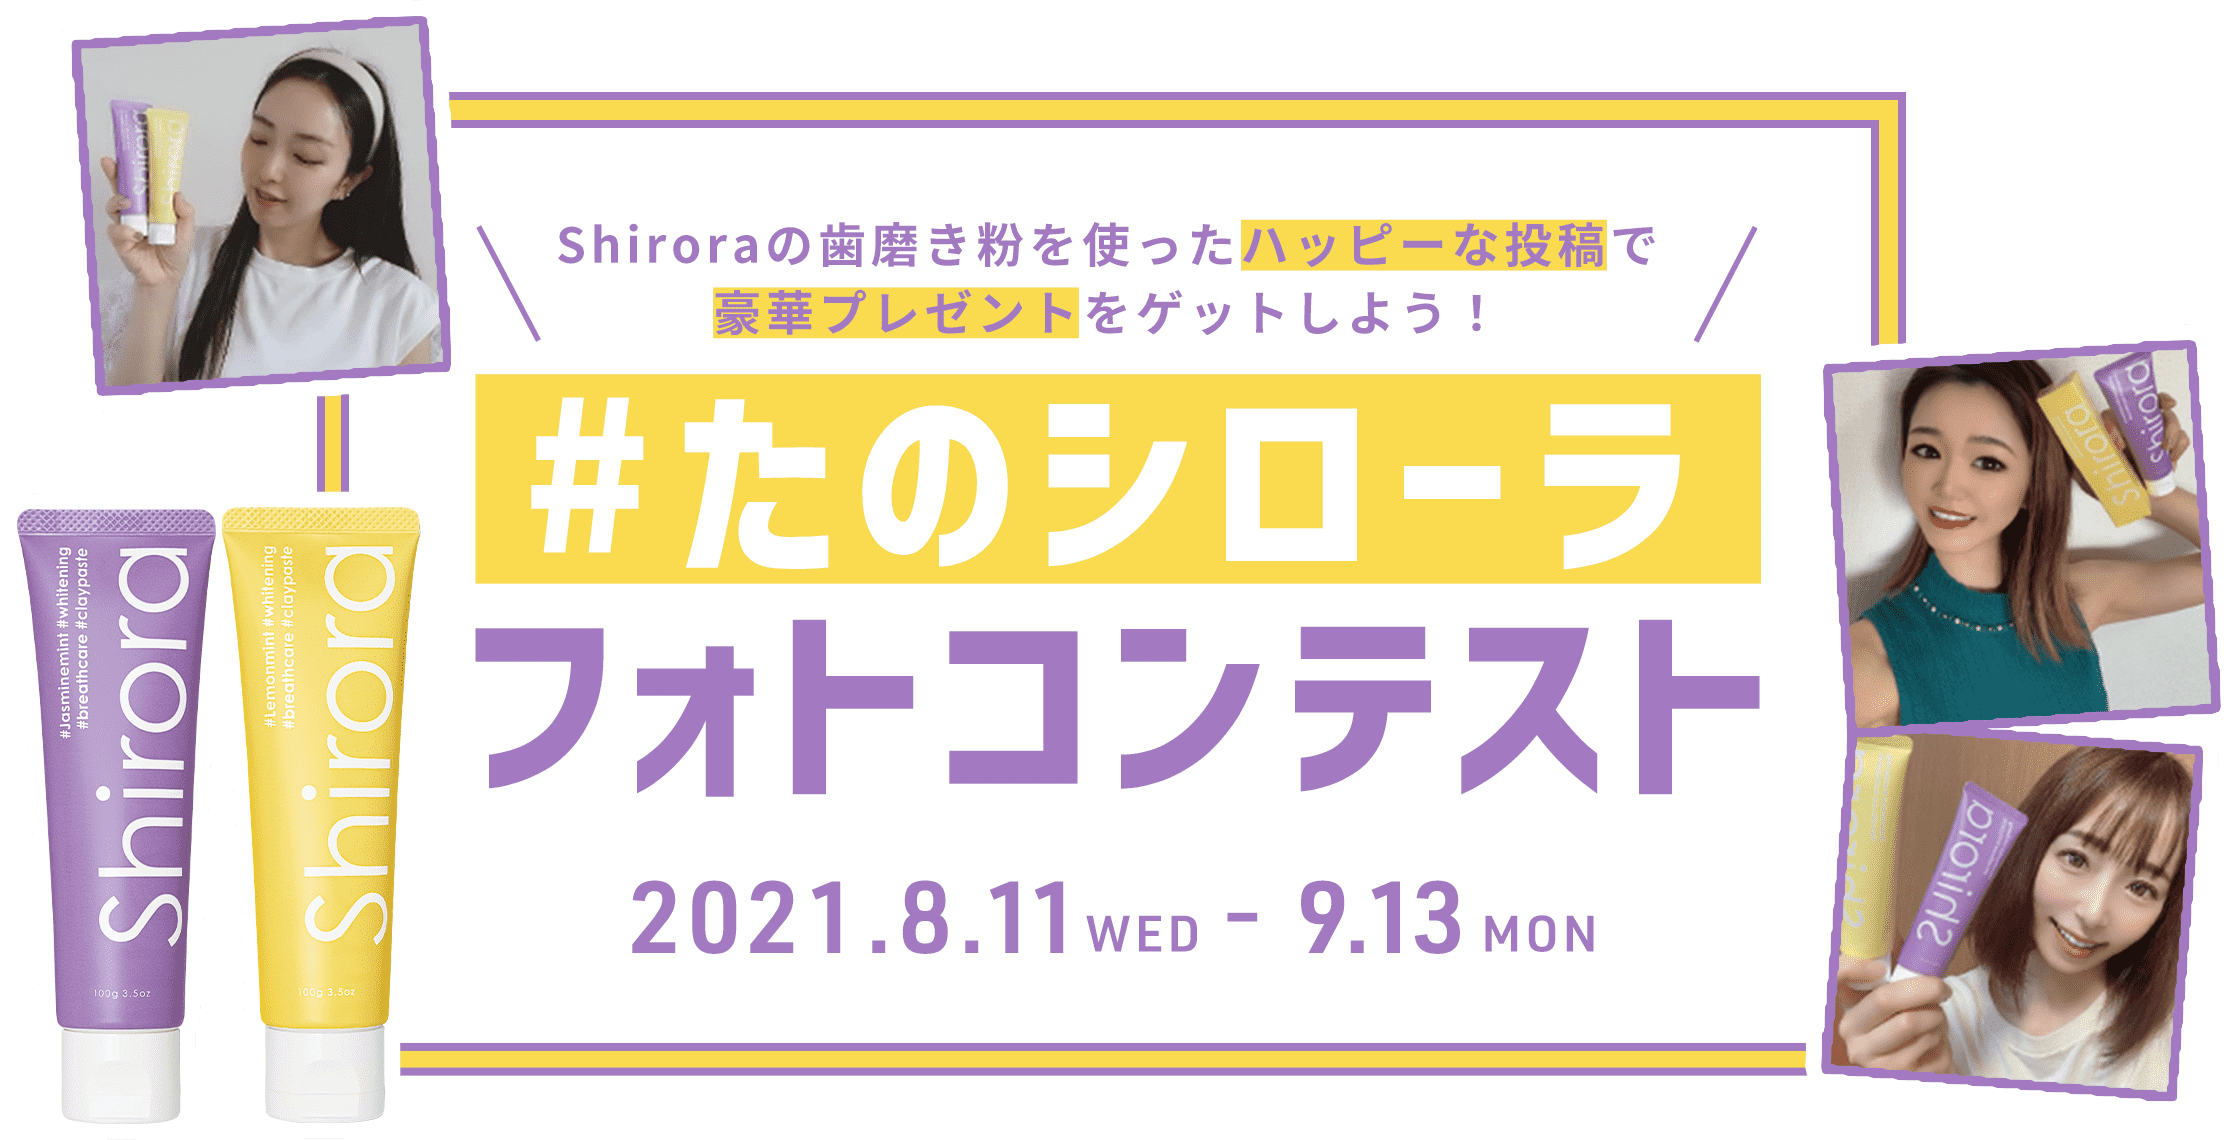 #たのシローラフォトコンテスト2021.8.11WED - 9.13MON